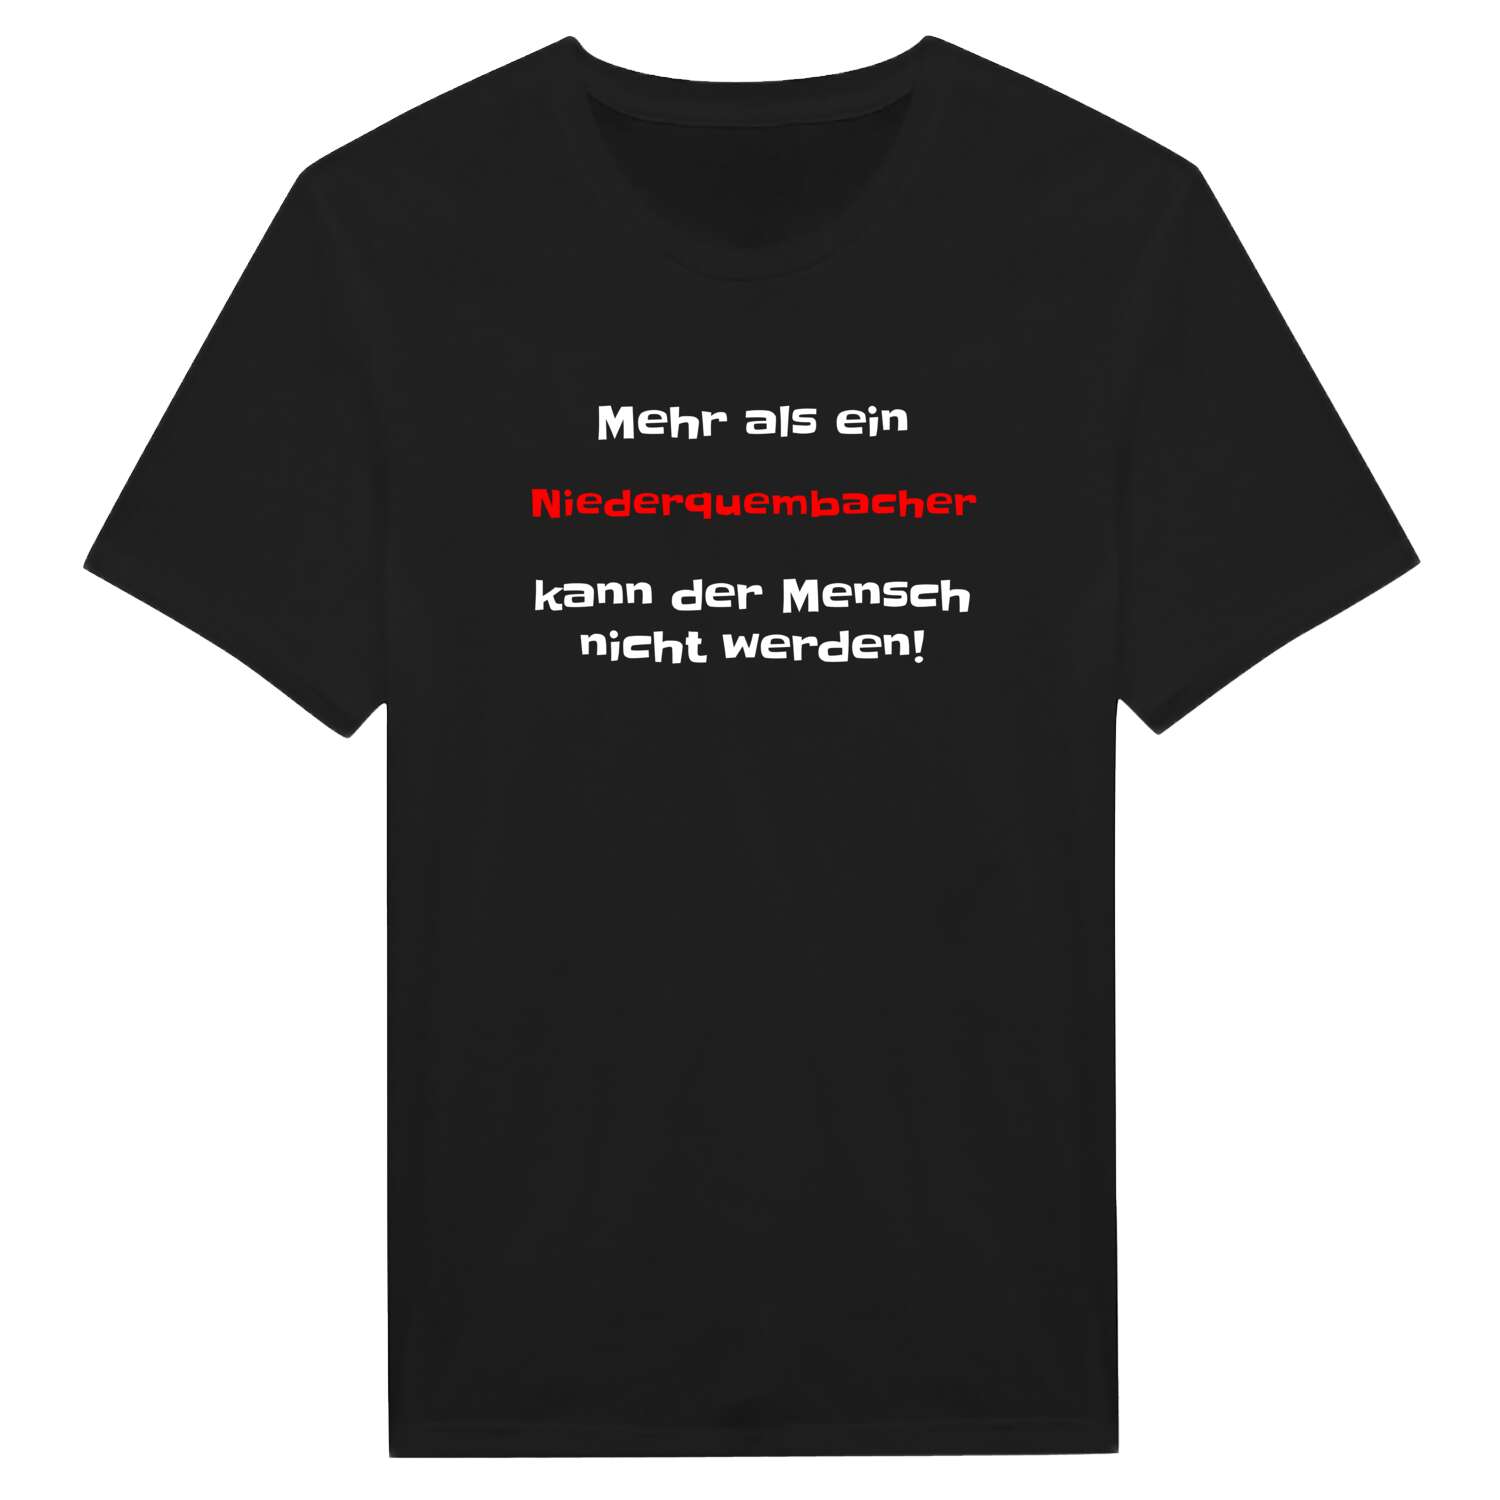 Niederquembach T-Shirt »Mehr als ein«